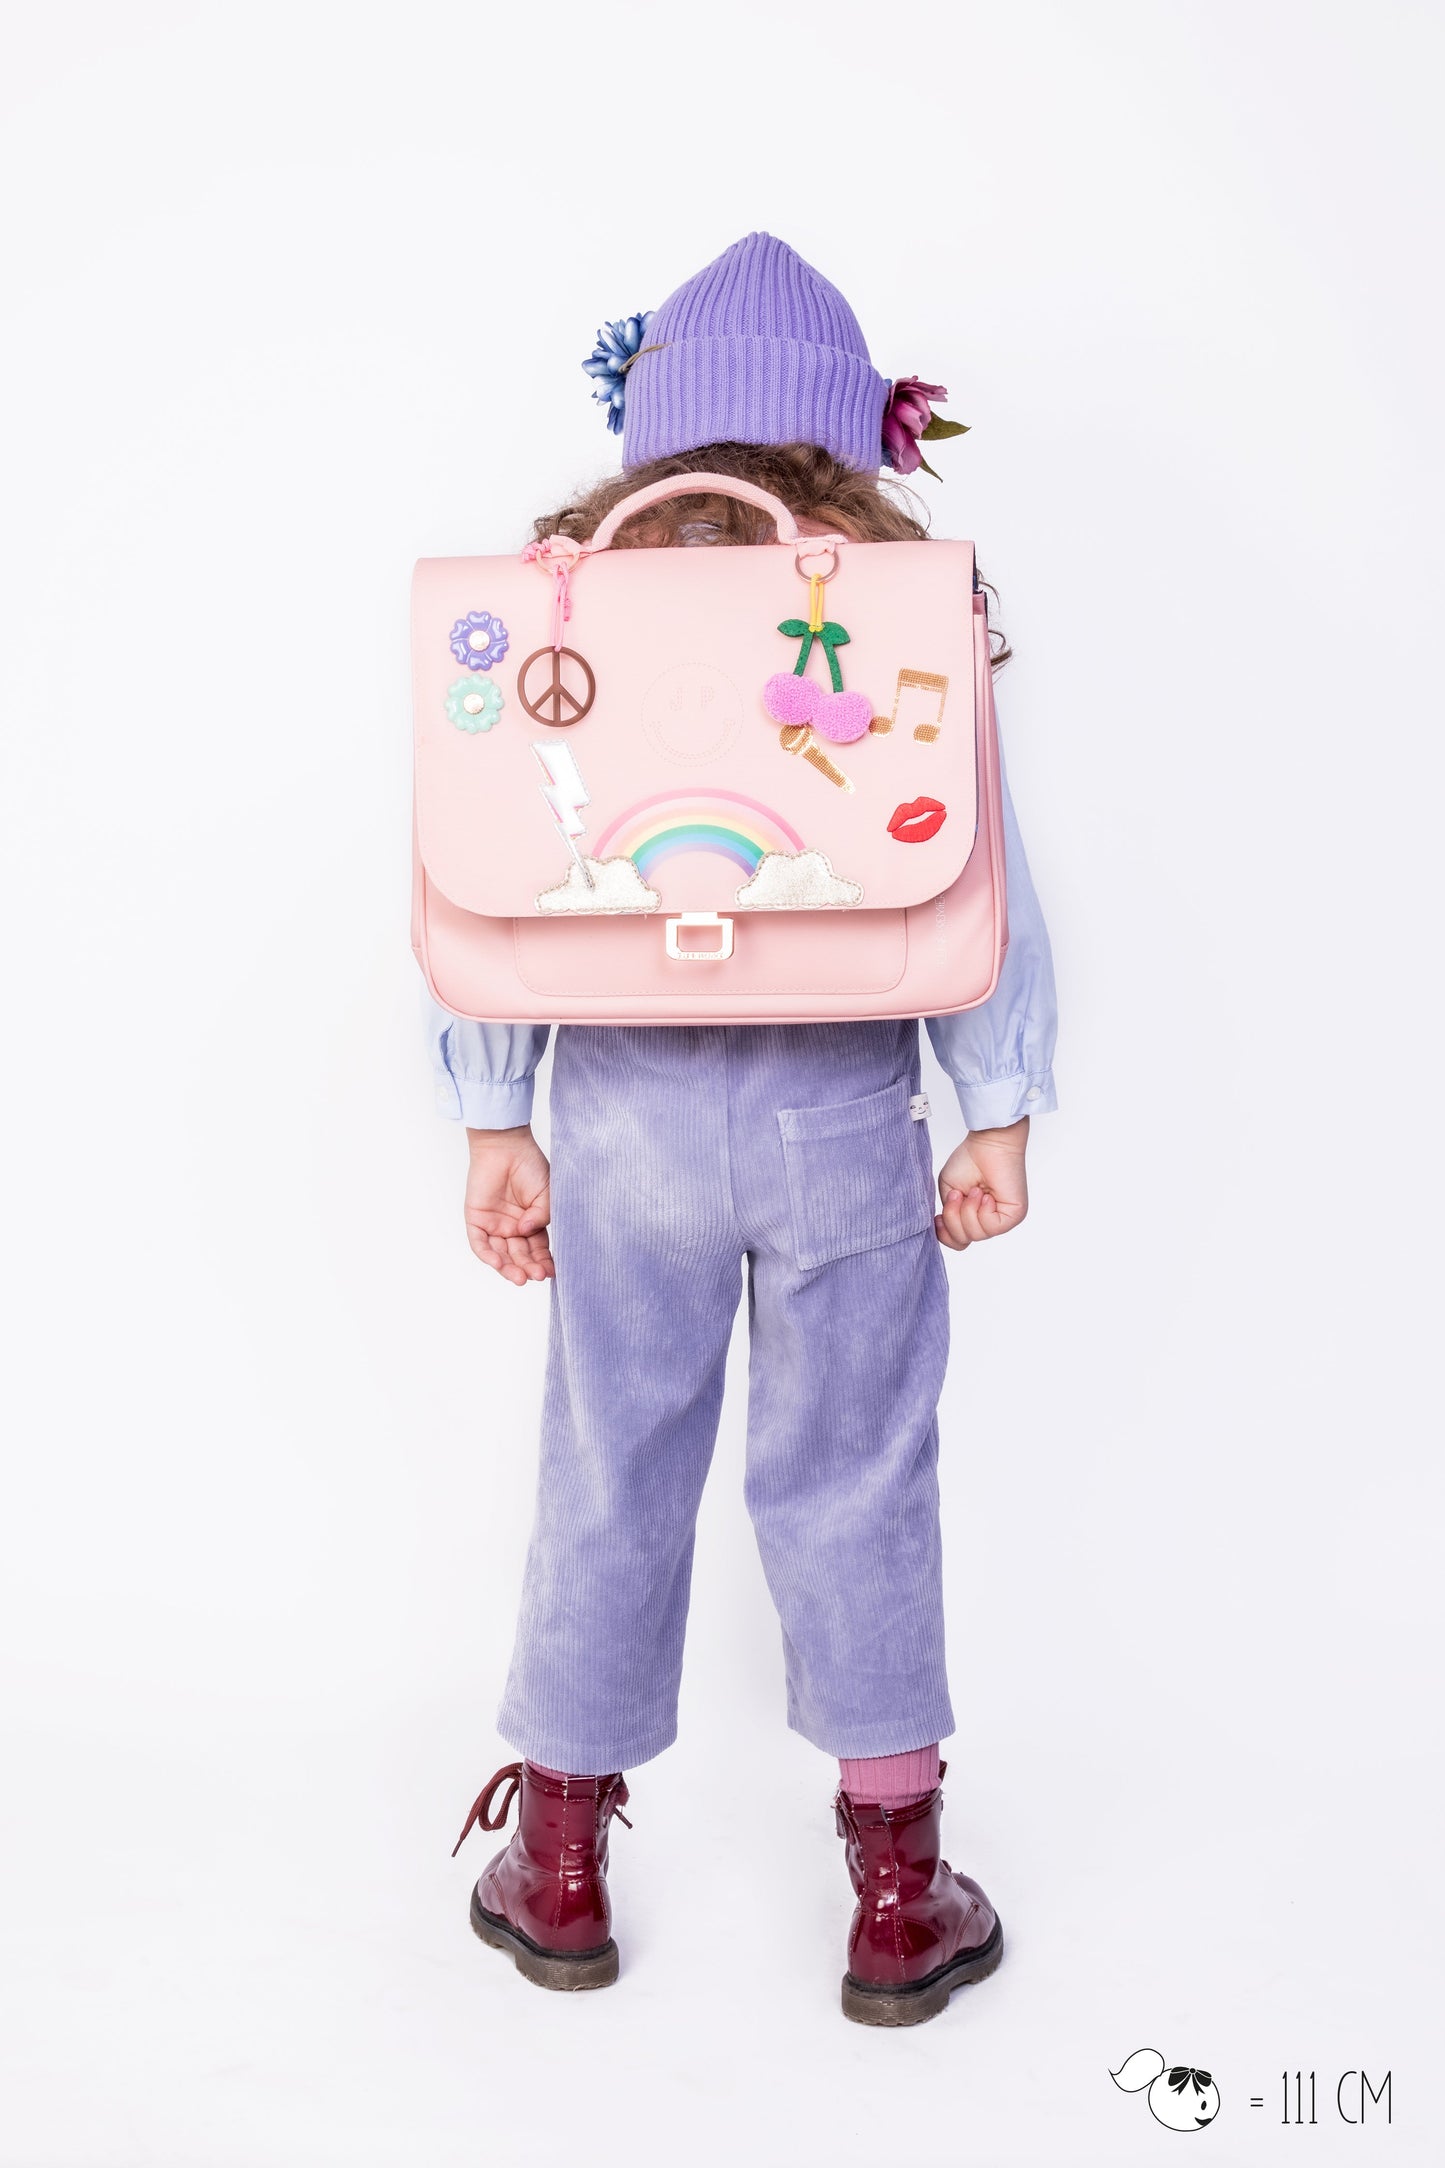 Jeune Premier It Bag Mini - Lady Gadget Pink Jeune Premier / Bags / It bag Mini